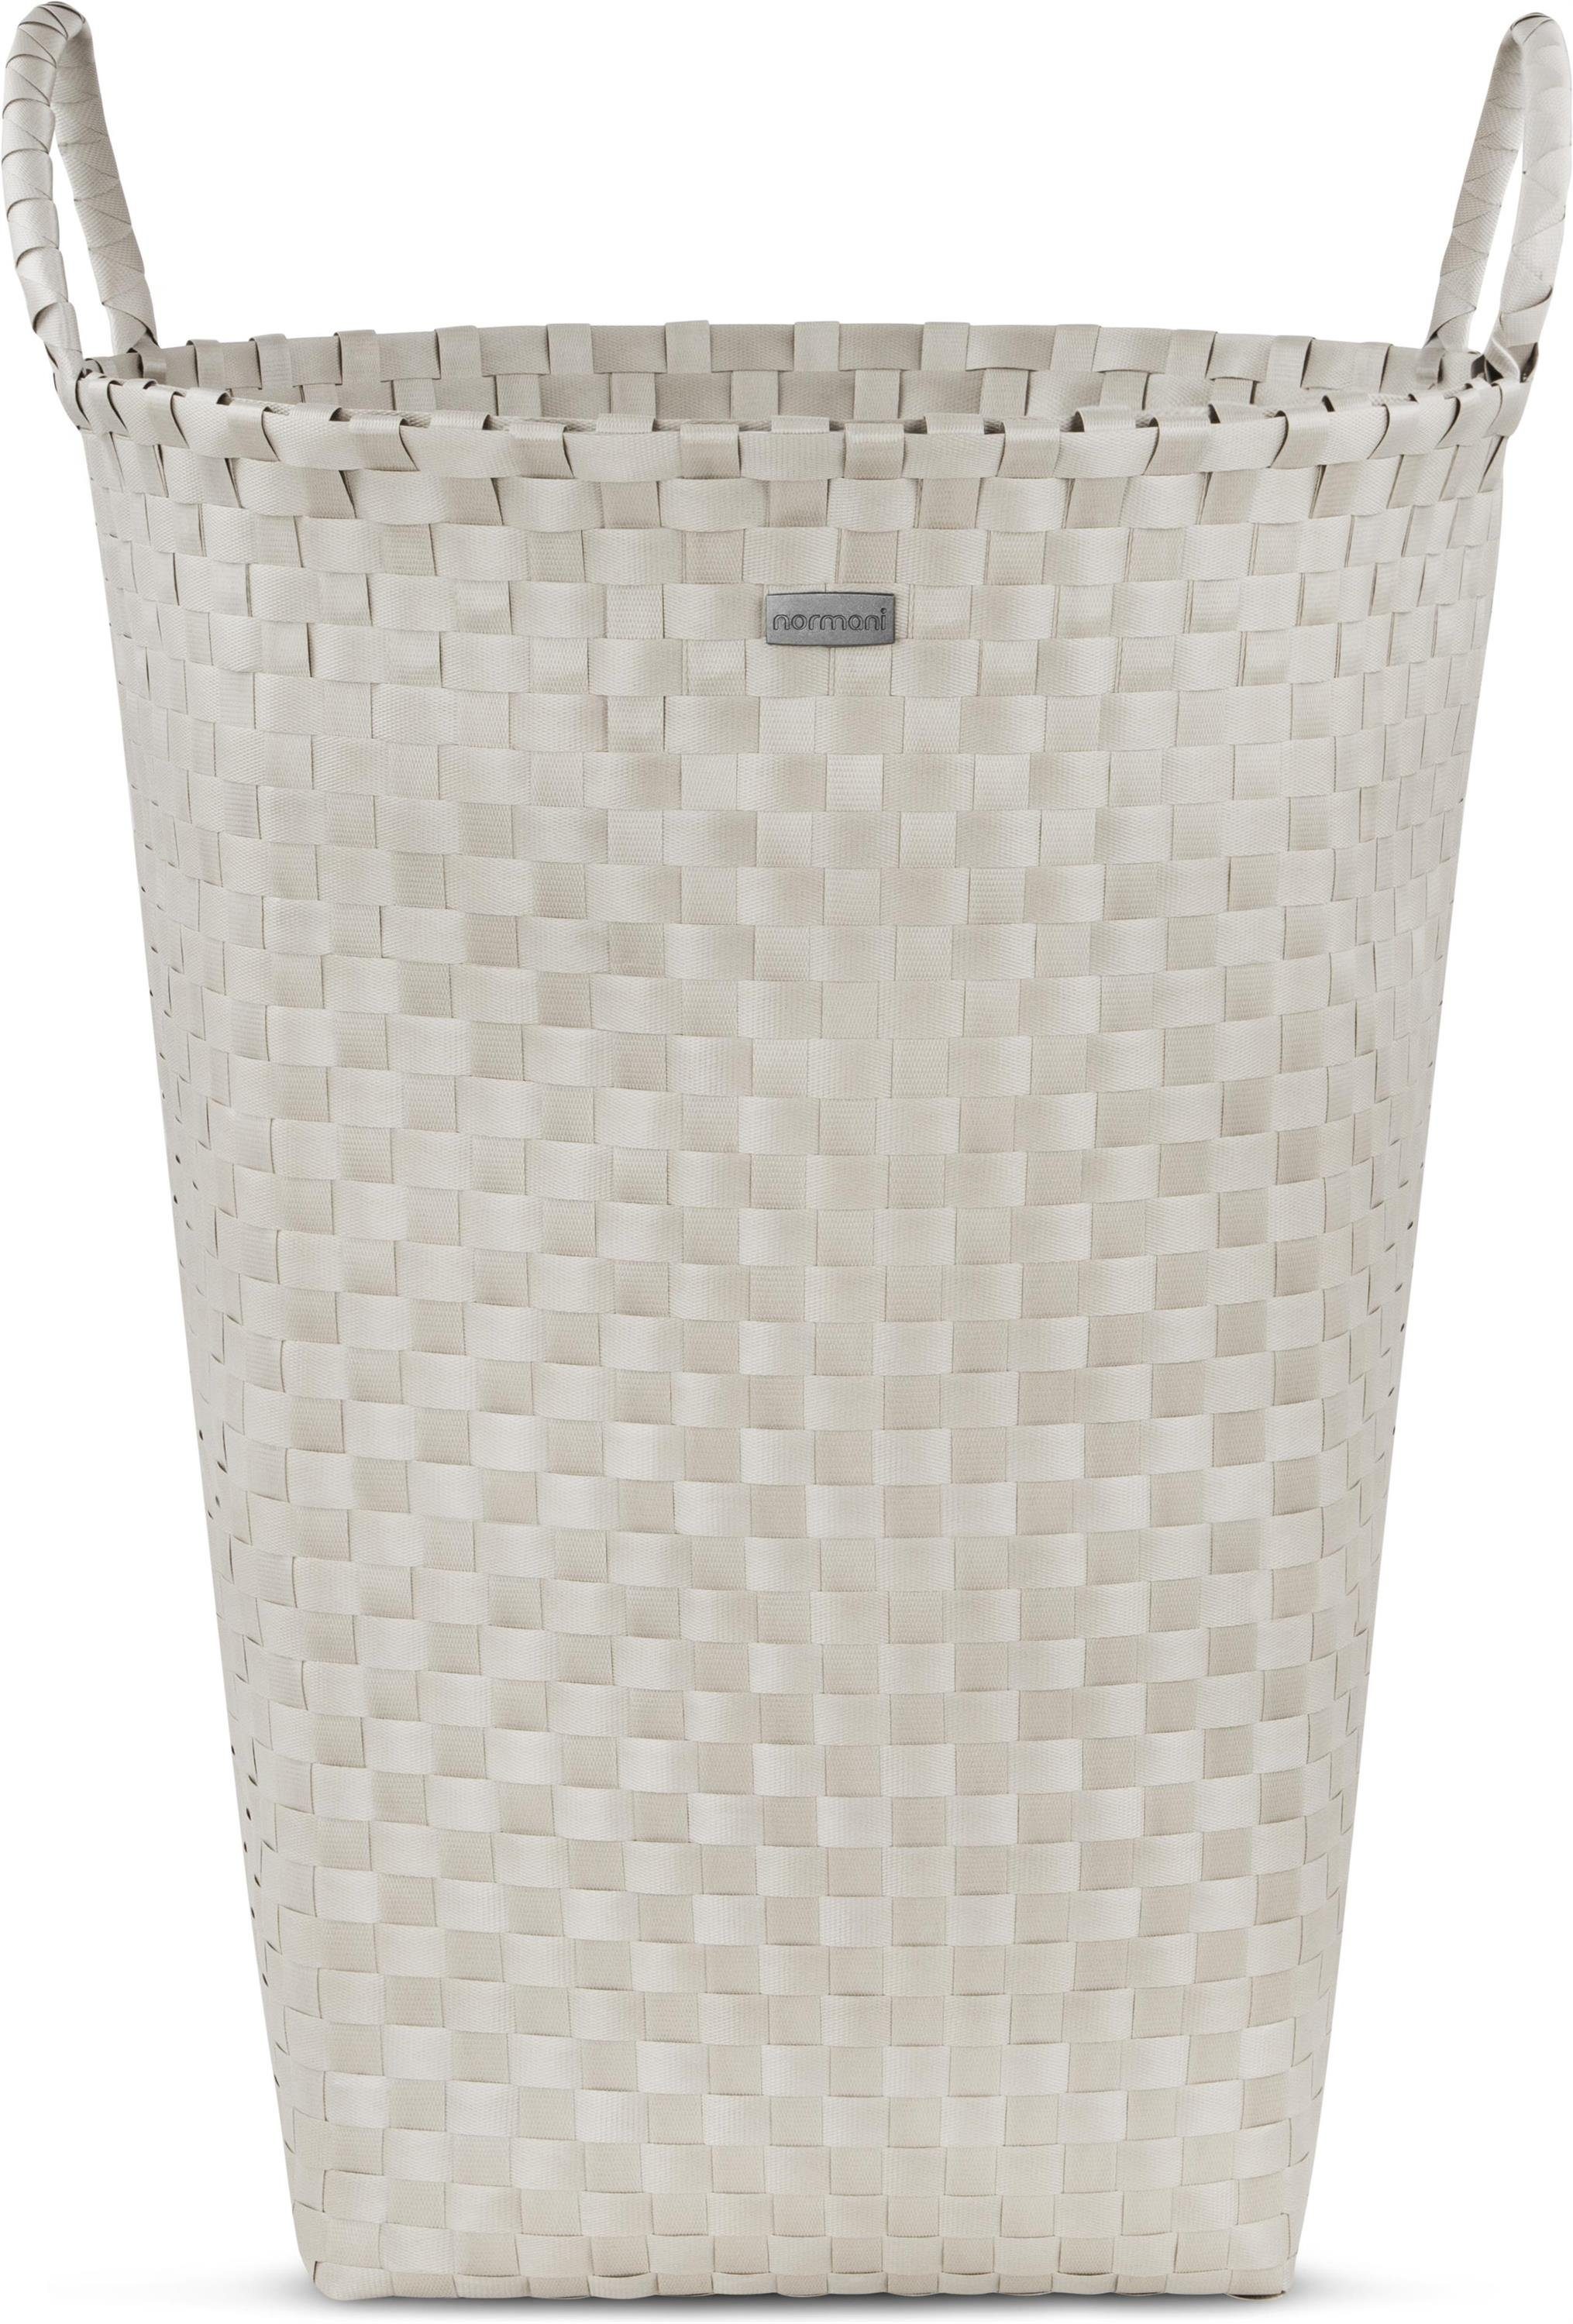 normani Wäschekorb Wäschekorb - Aufbewahrungskorb 36 Liter, Wäschesammler  aus schmutzunempfindlichem Material